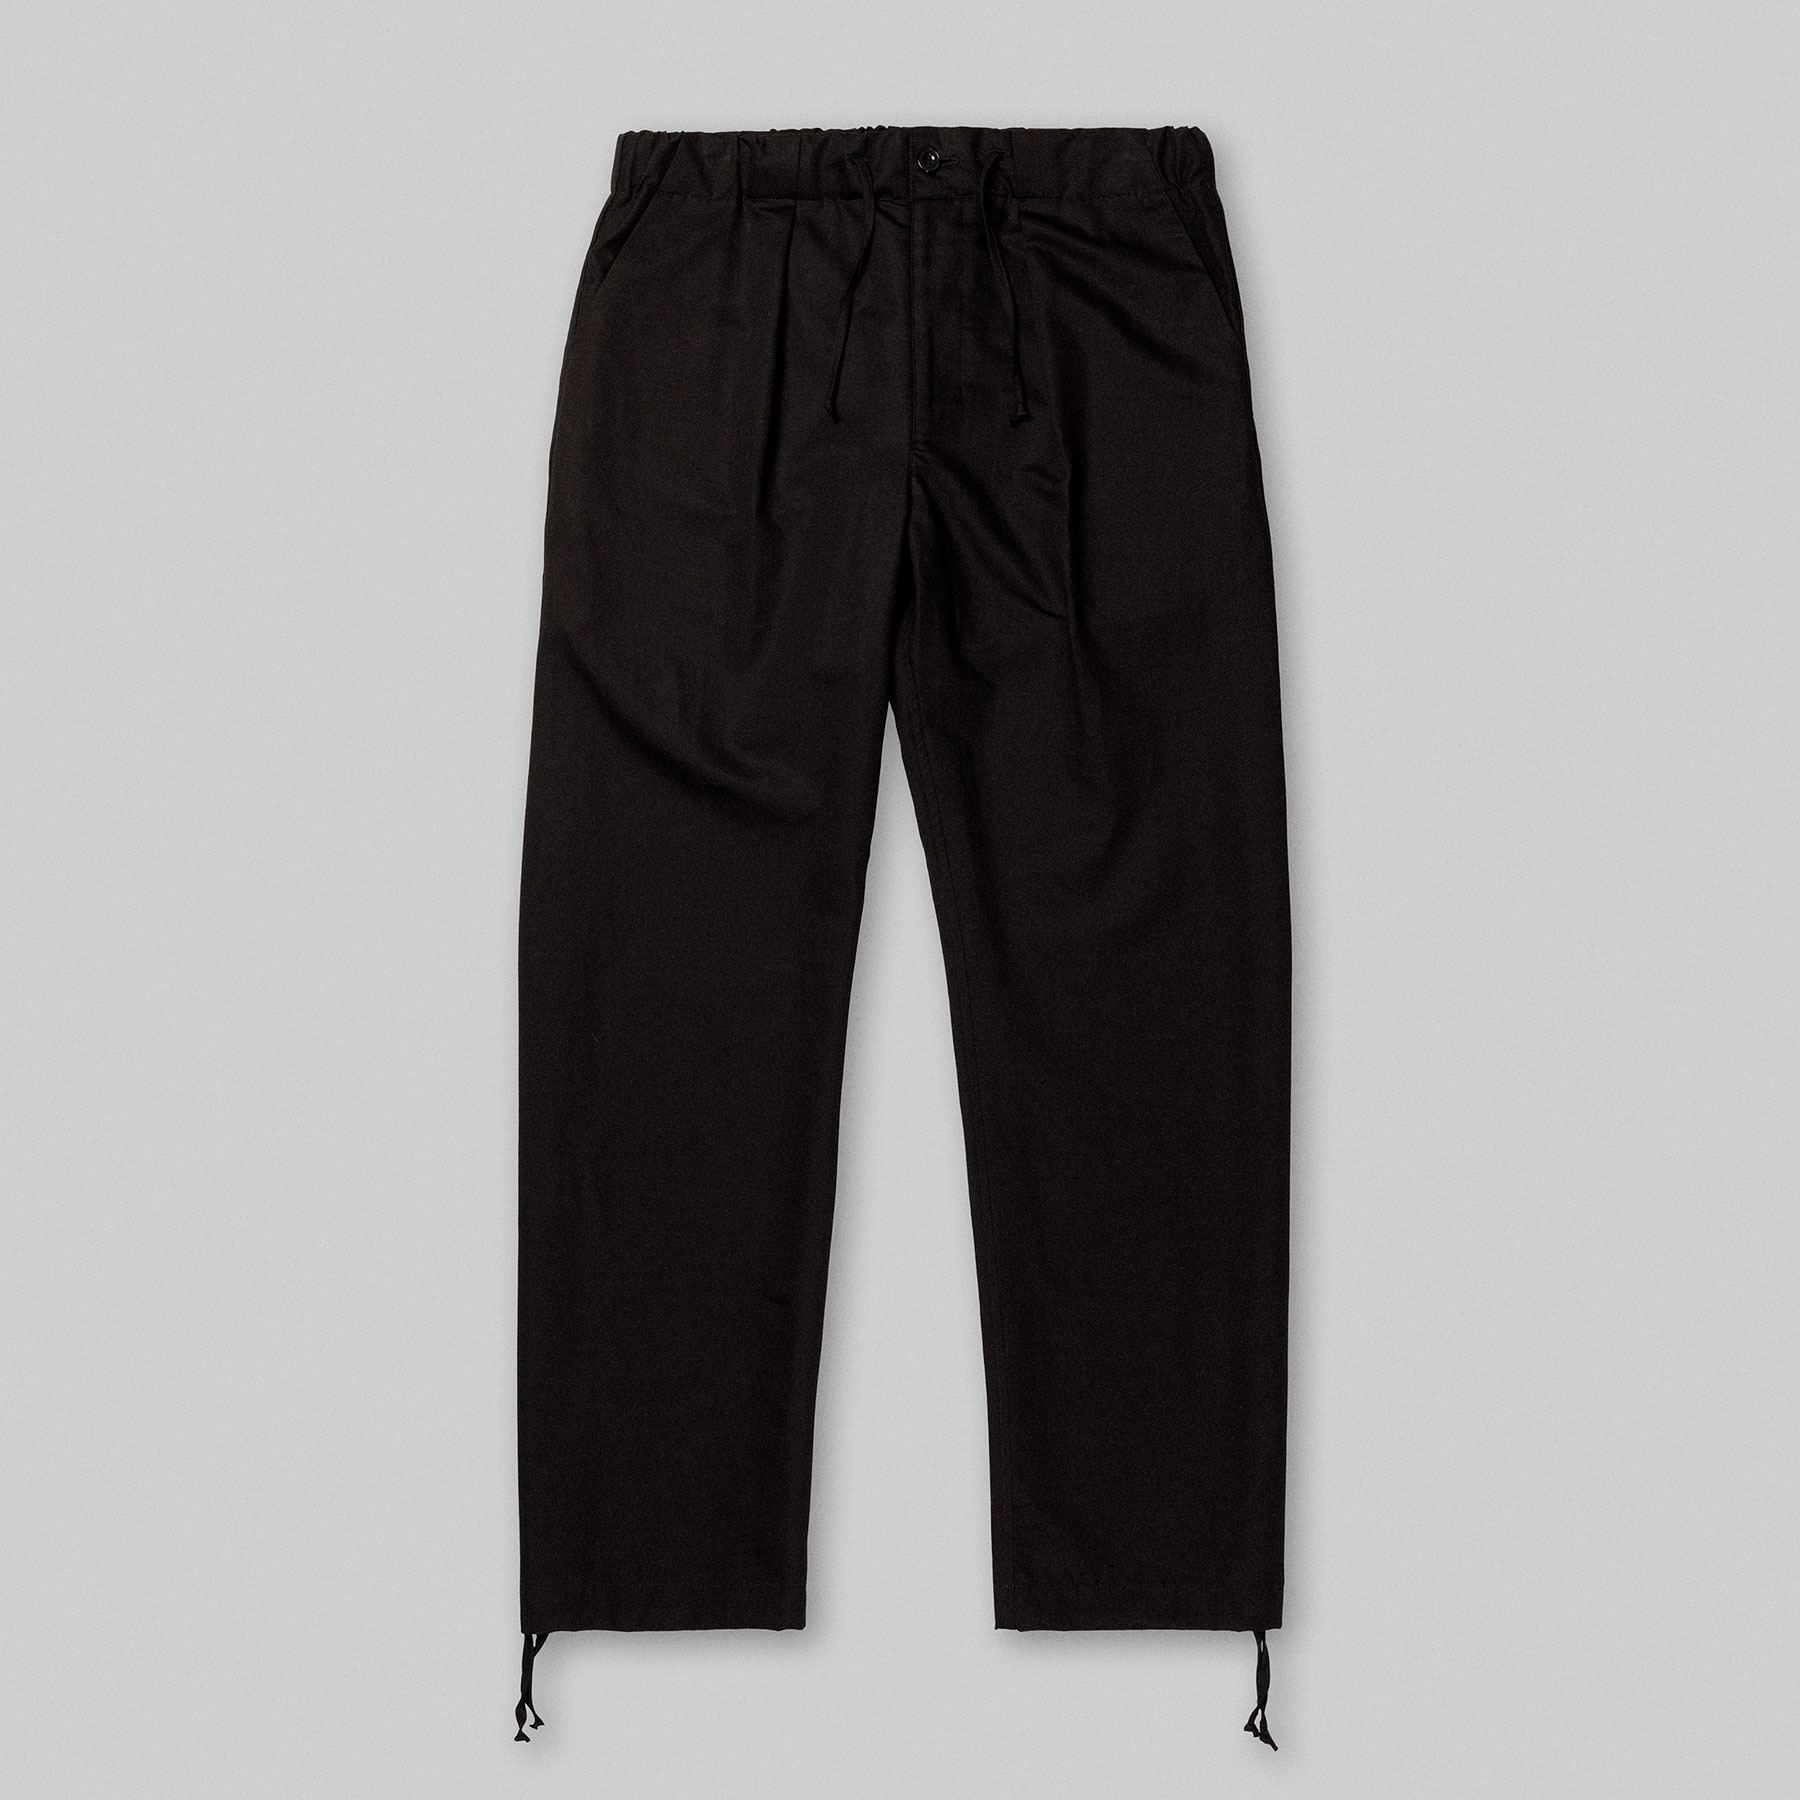 Pantalon TERRA par Arpenteur en coloris taffetas Noir